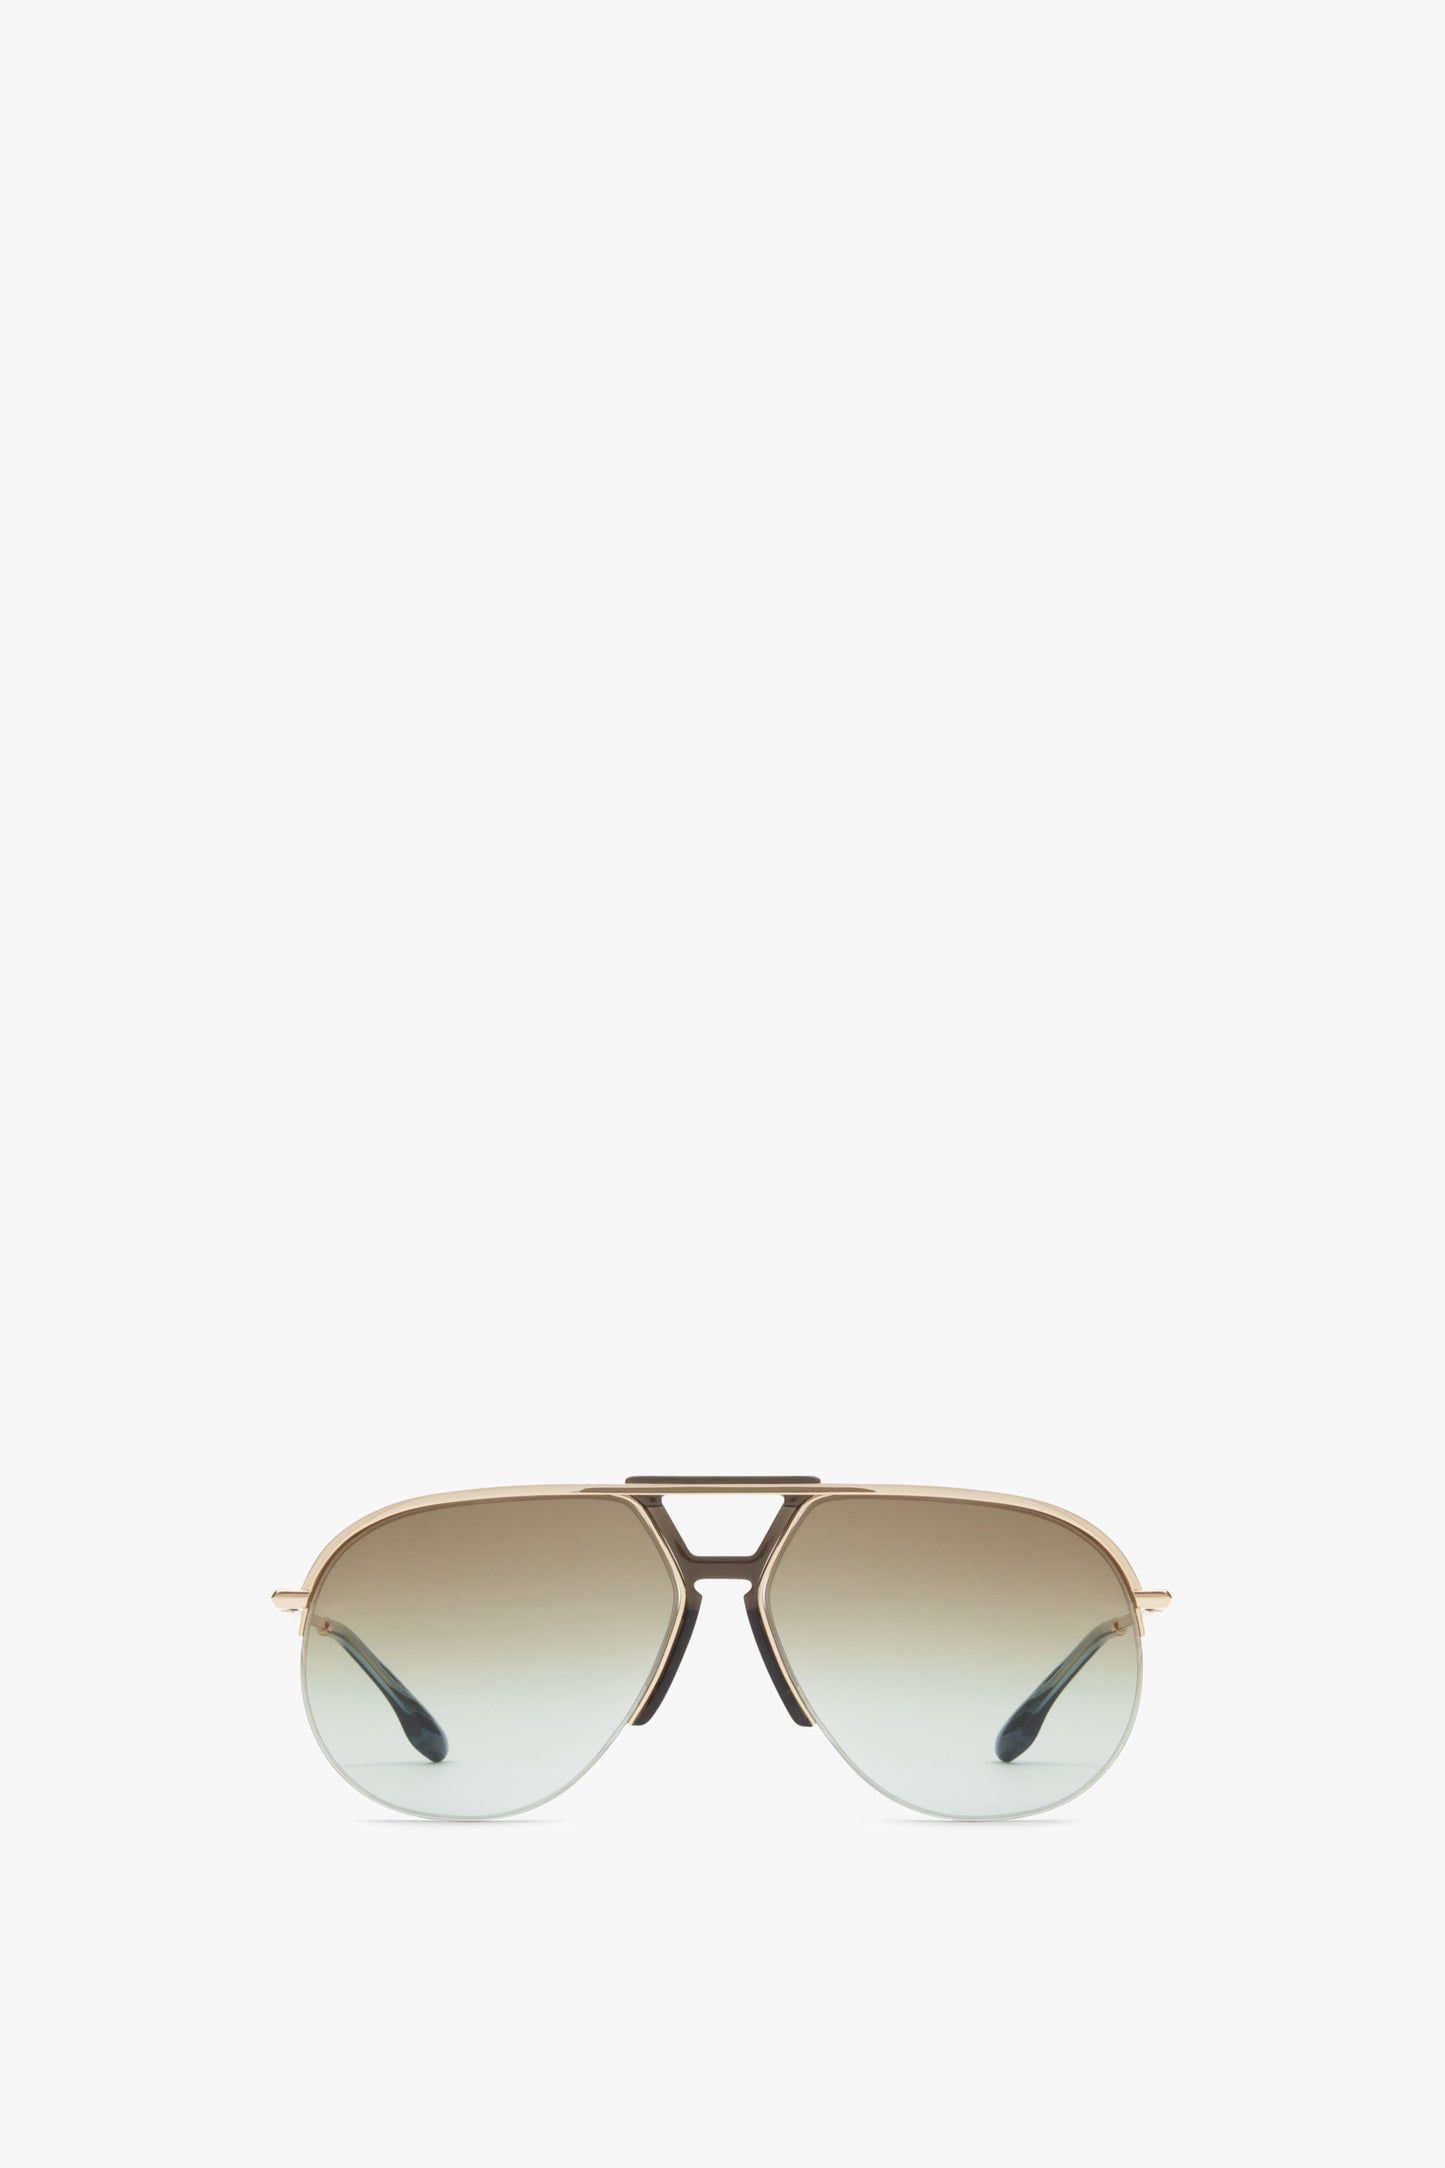 Brow Aviator Sunglasses In Azure